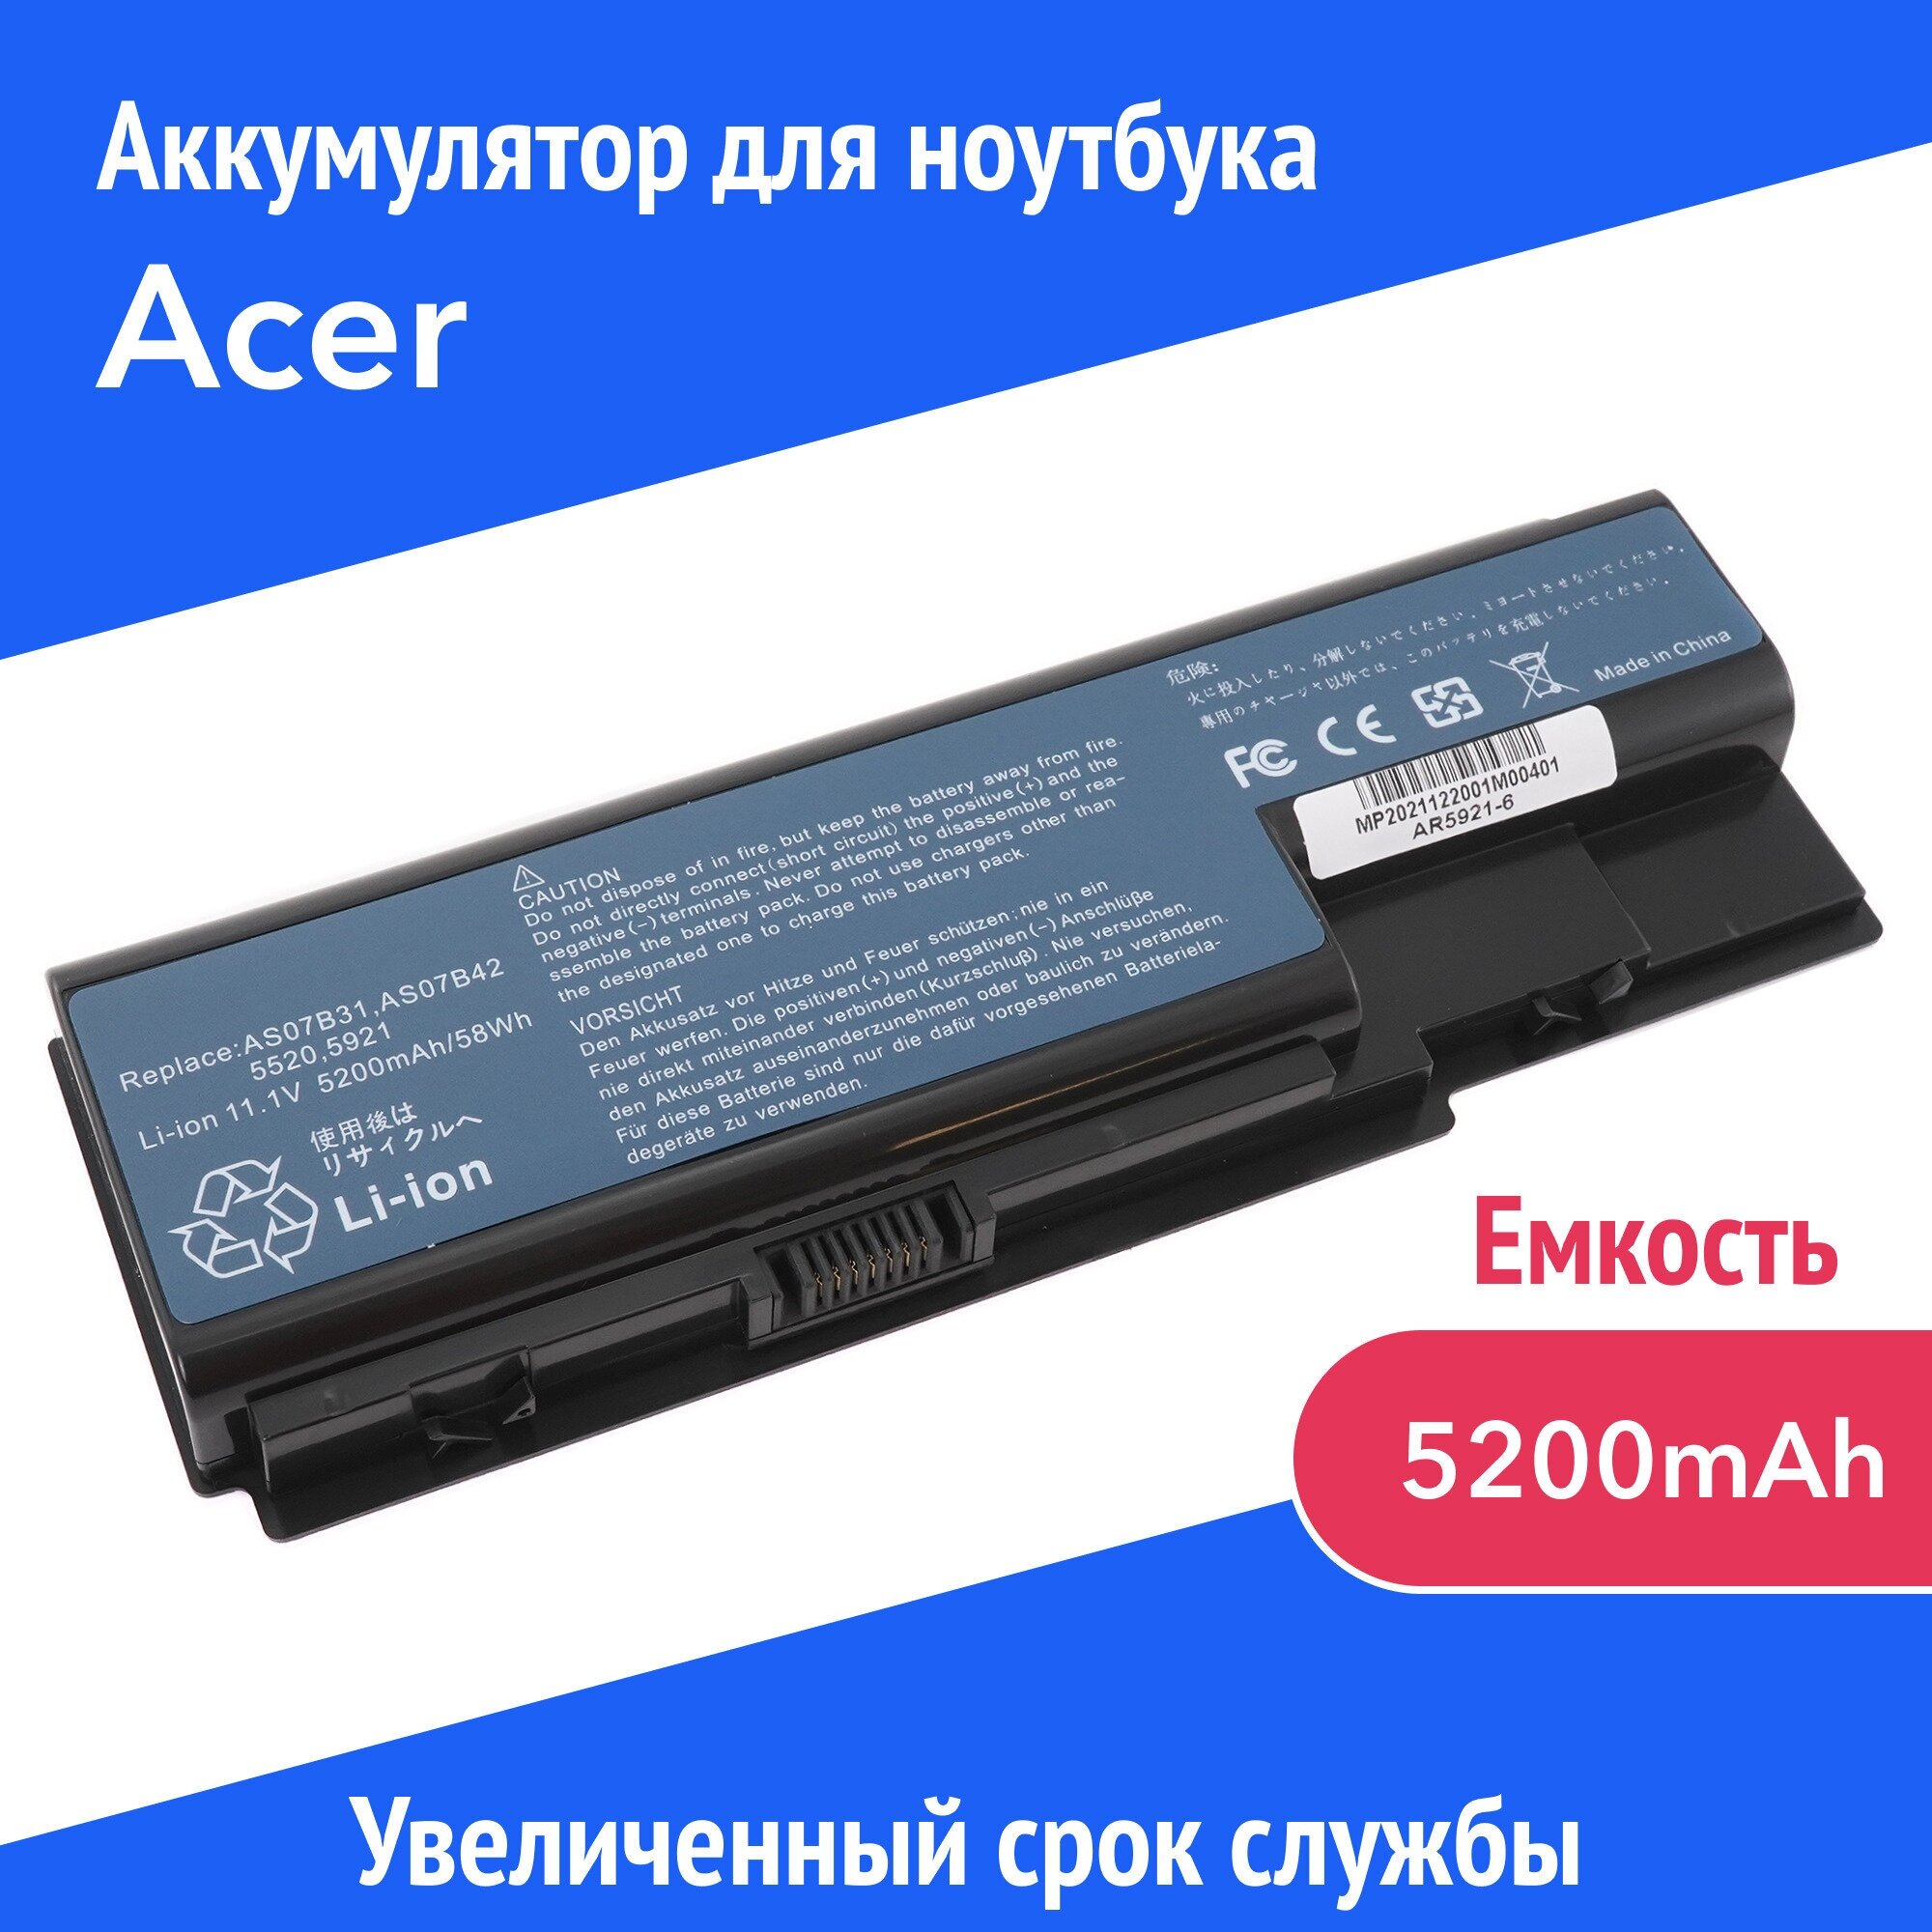 Аккумулятор AS07B31 для Acer Aspire 5520 / 5530 / 6530G / 7520G / 7730G (AS07B71, JDW50) 11.1 V